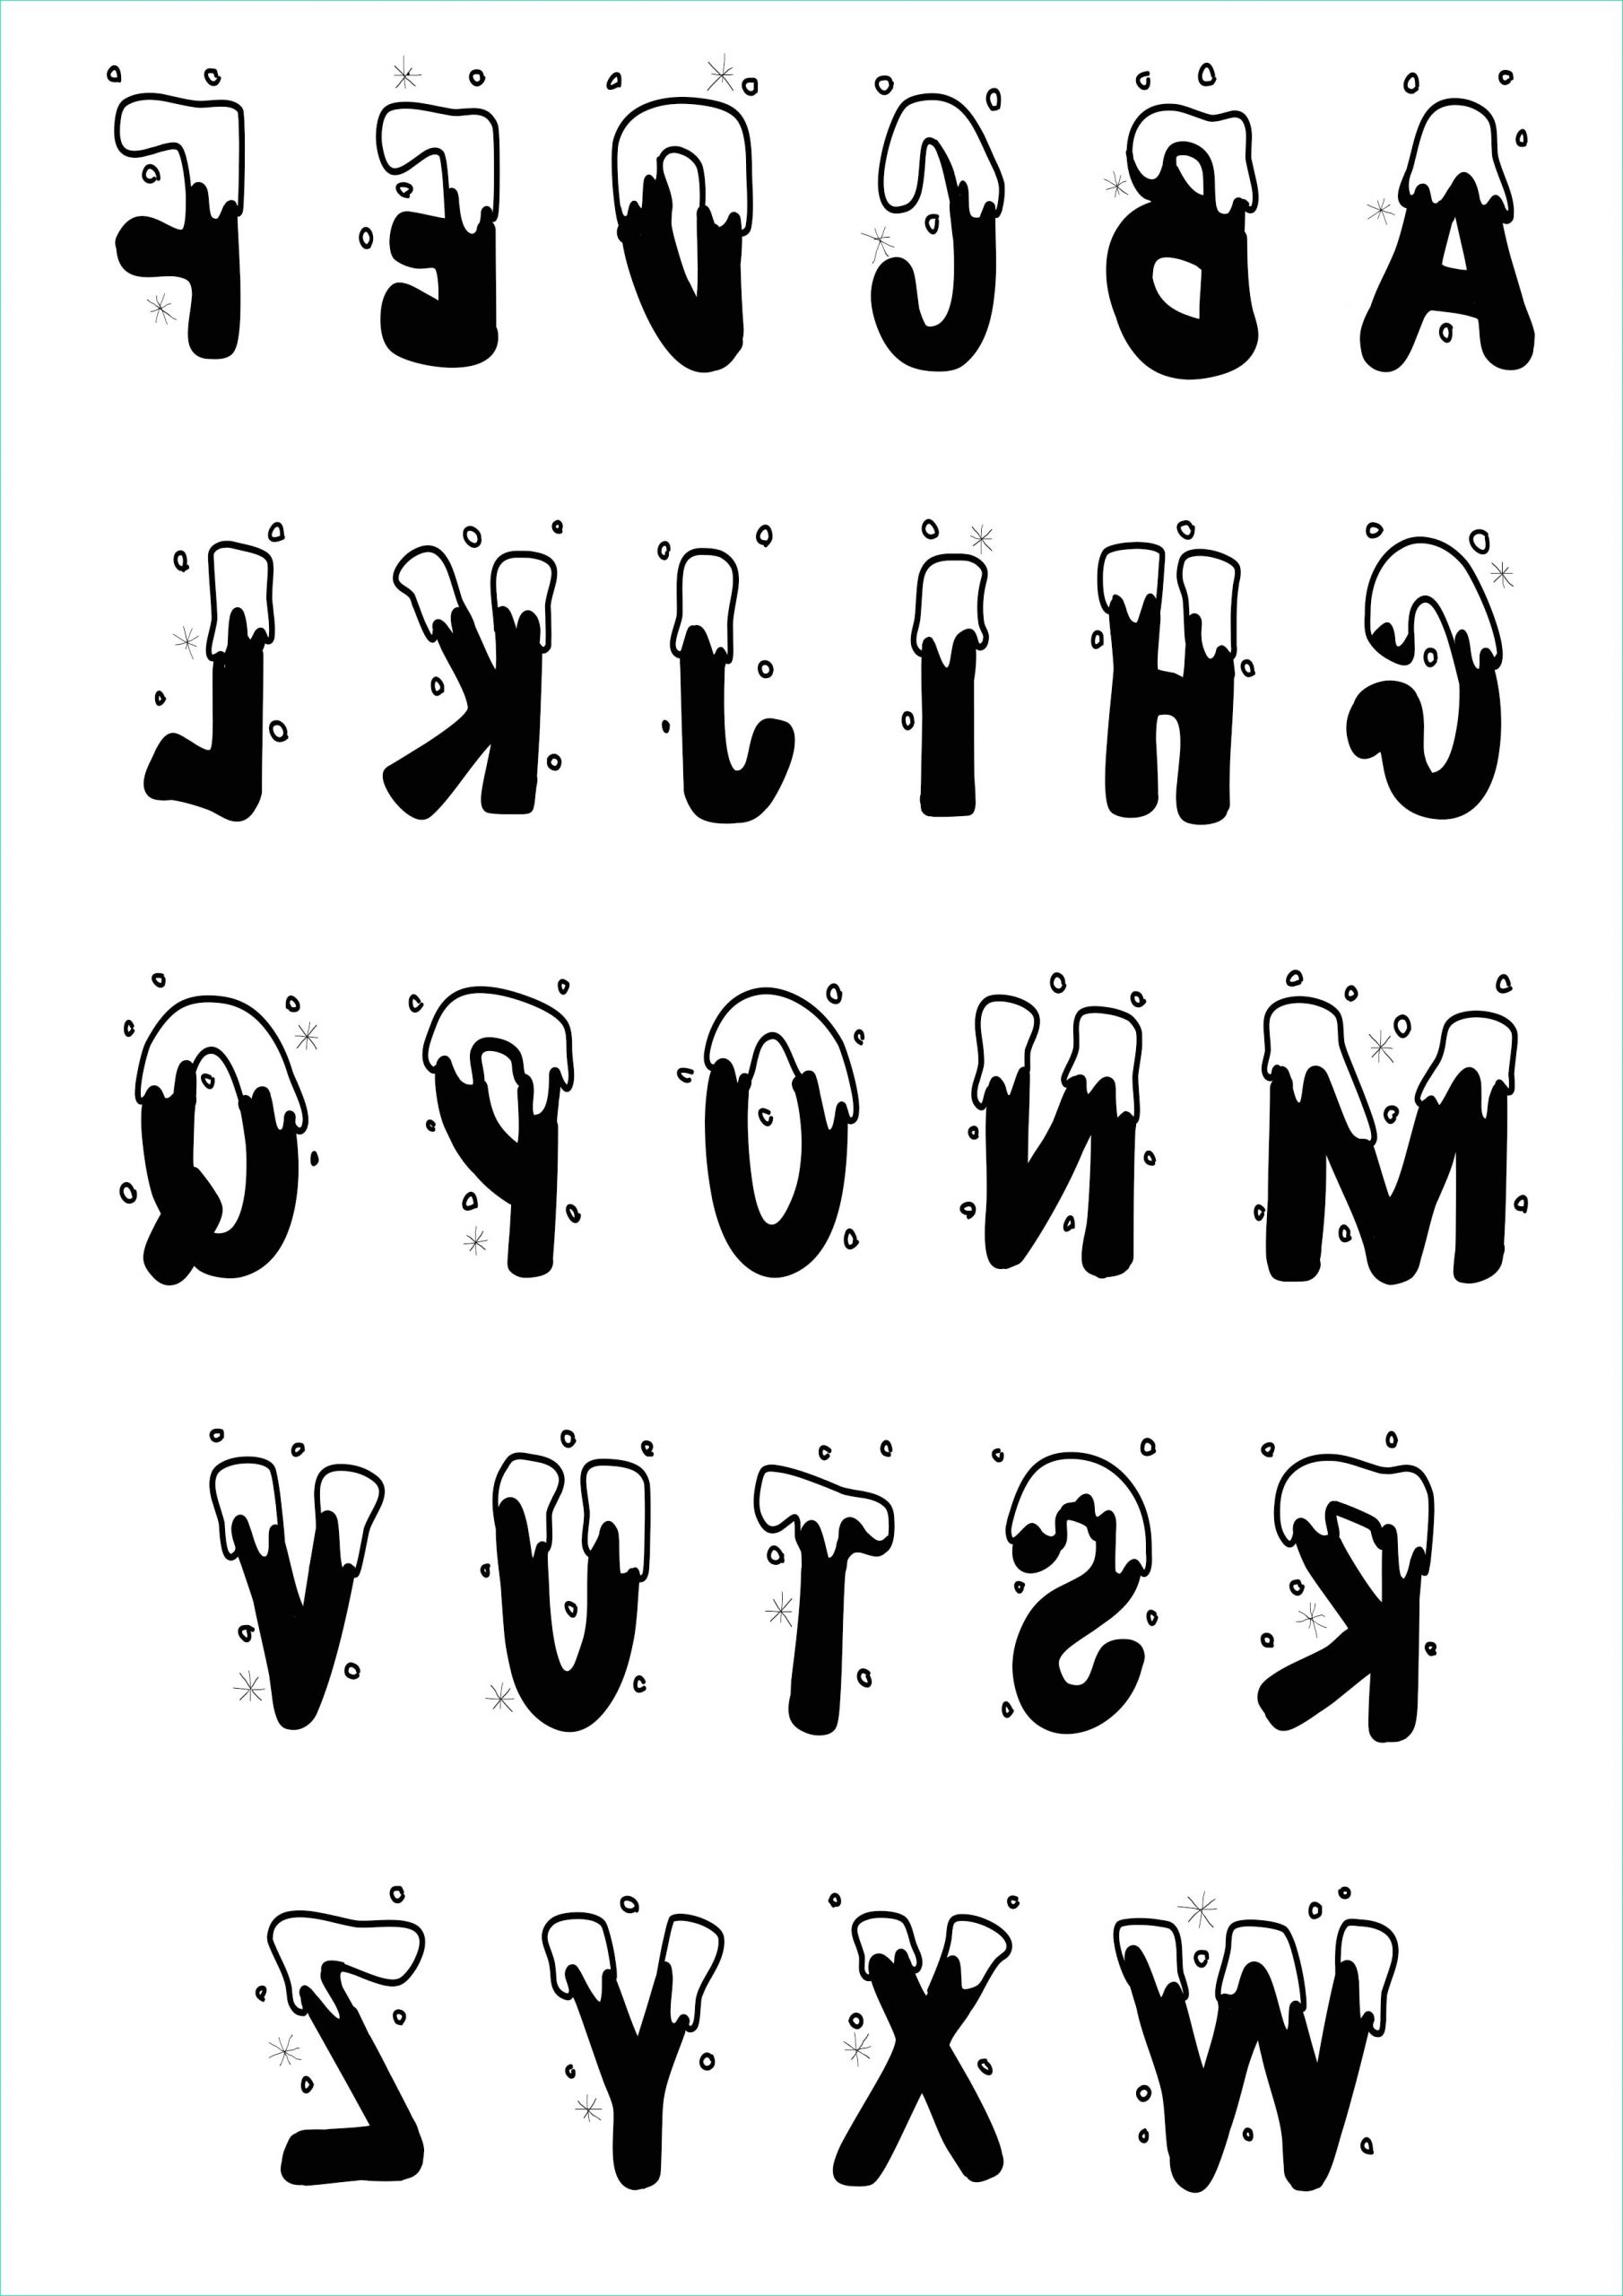 Lettre Alphabet à Imprimer Gratuit Inspirant Images Simple Alphabet 6 Alphabet Coloring Pages for Kids to